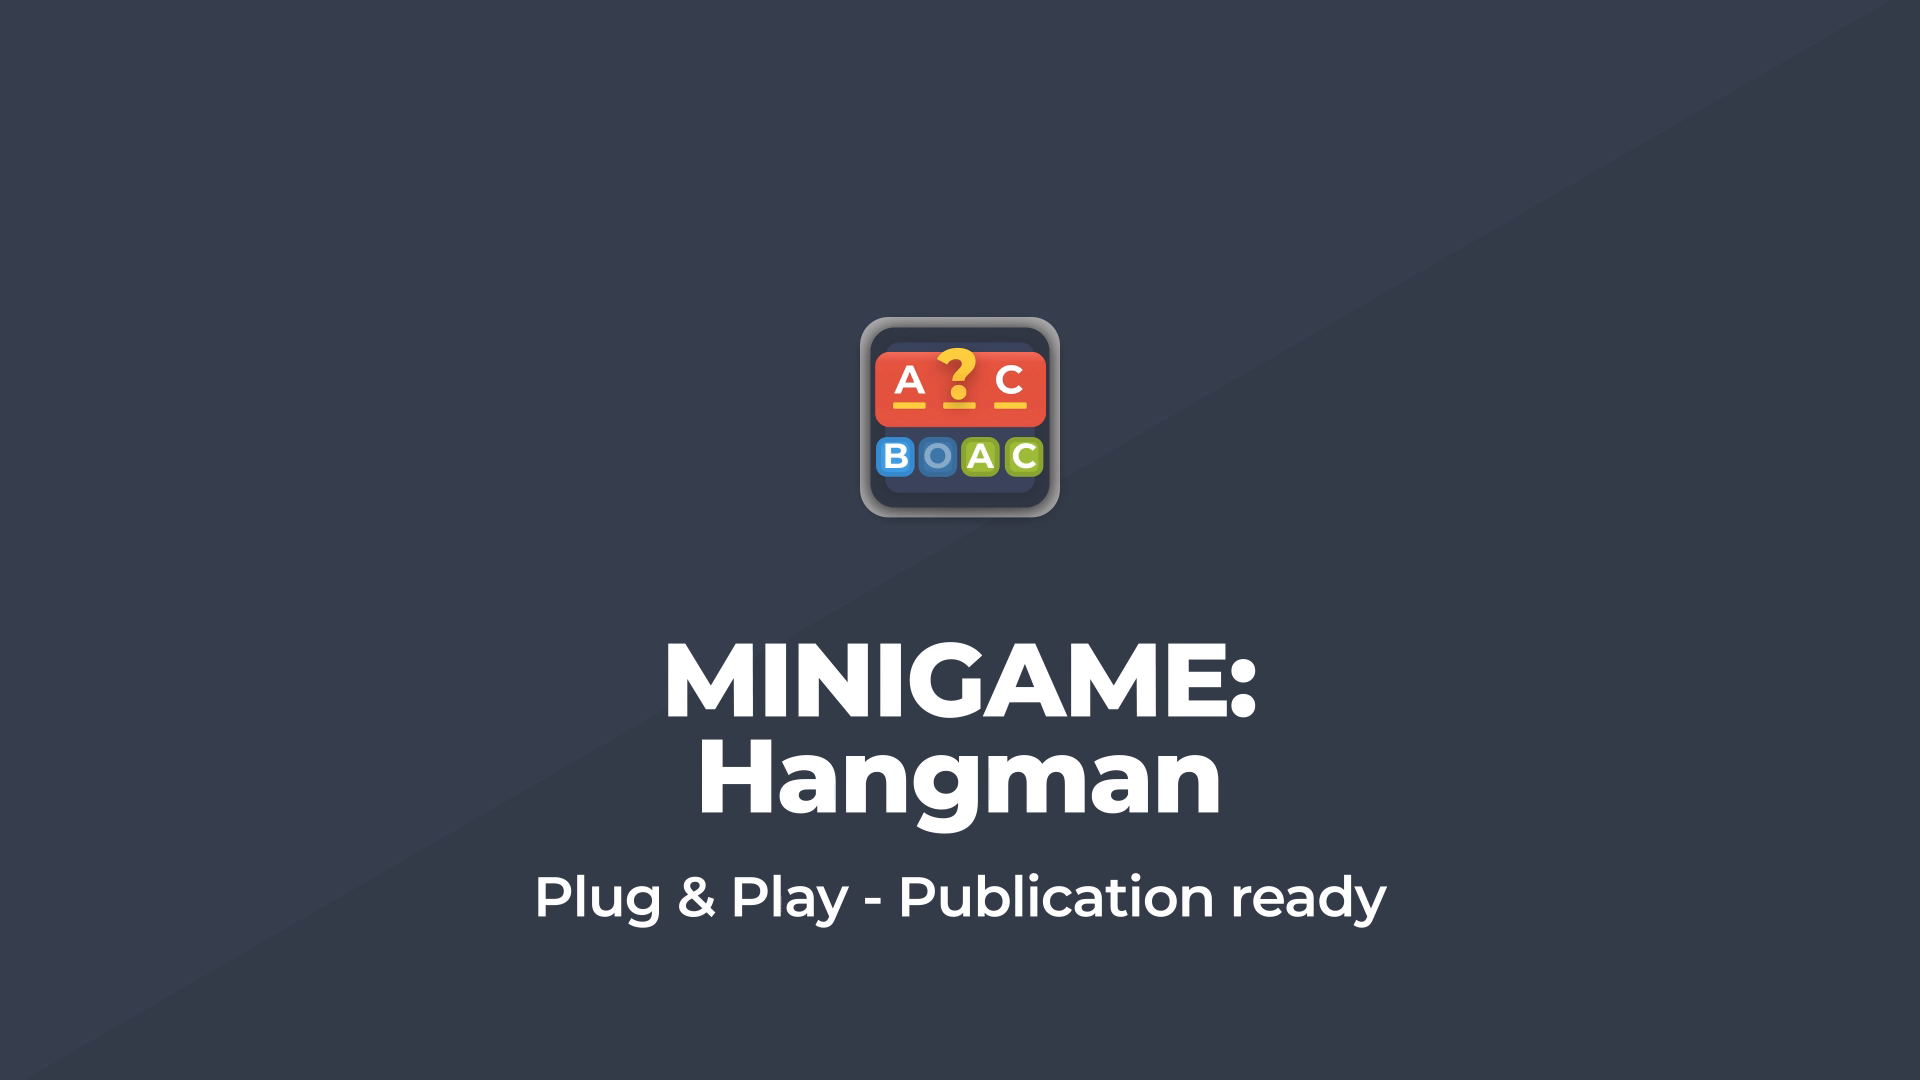 Forum Game - It is hangman